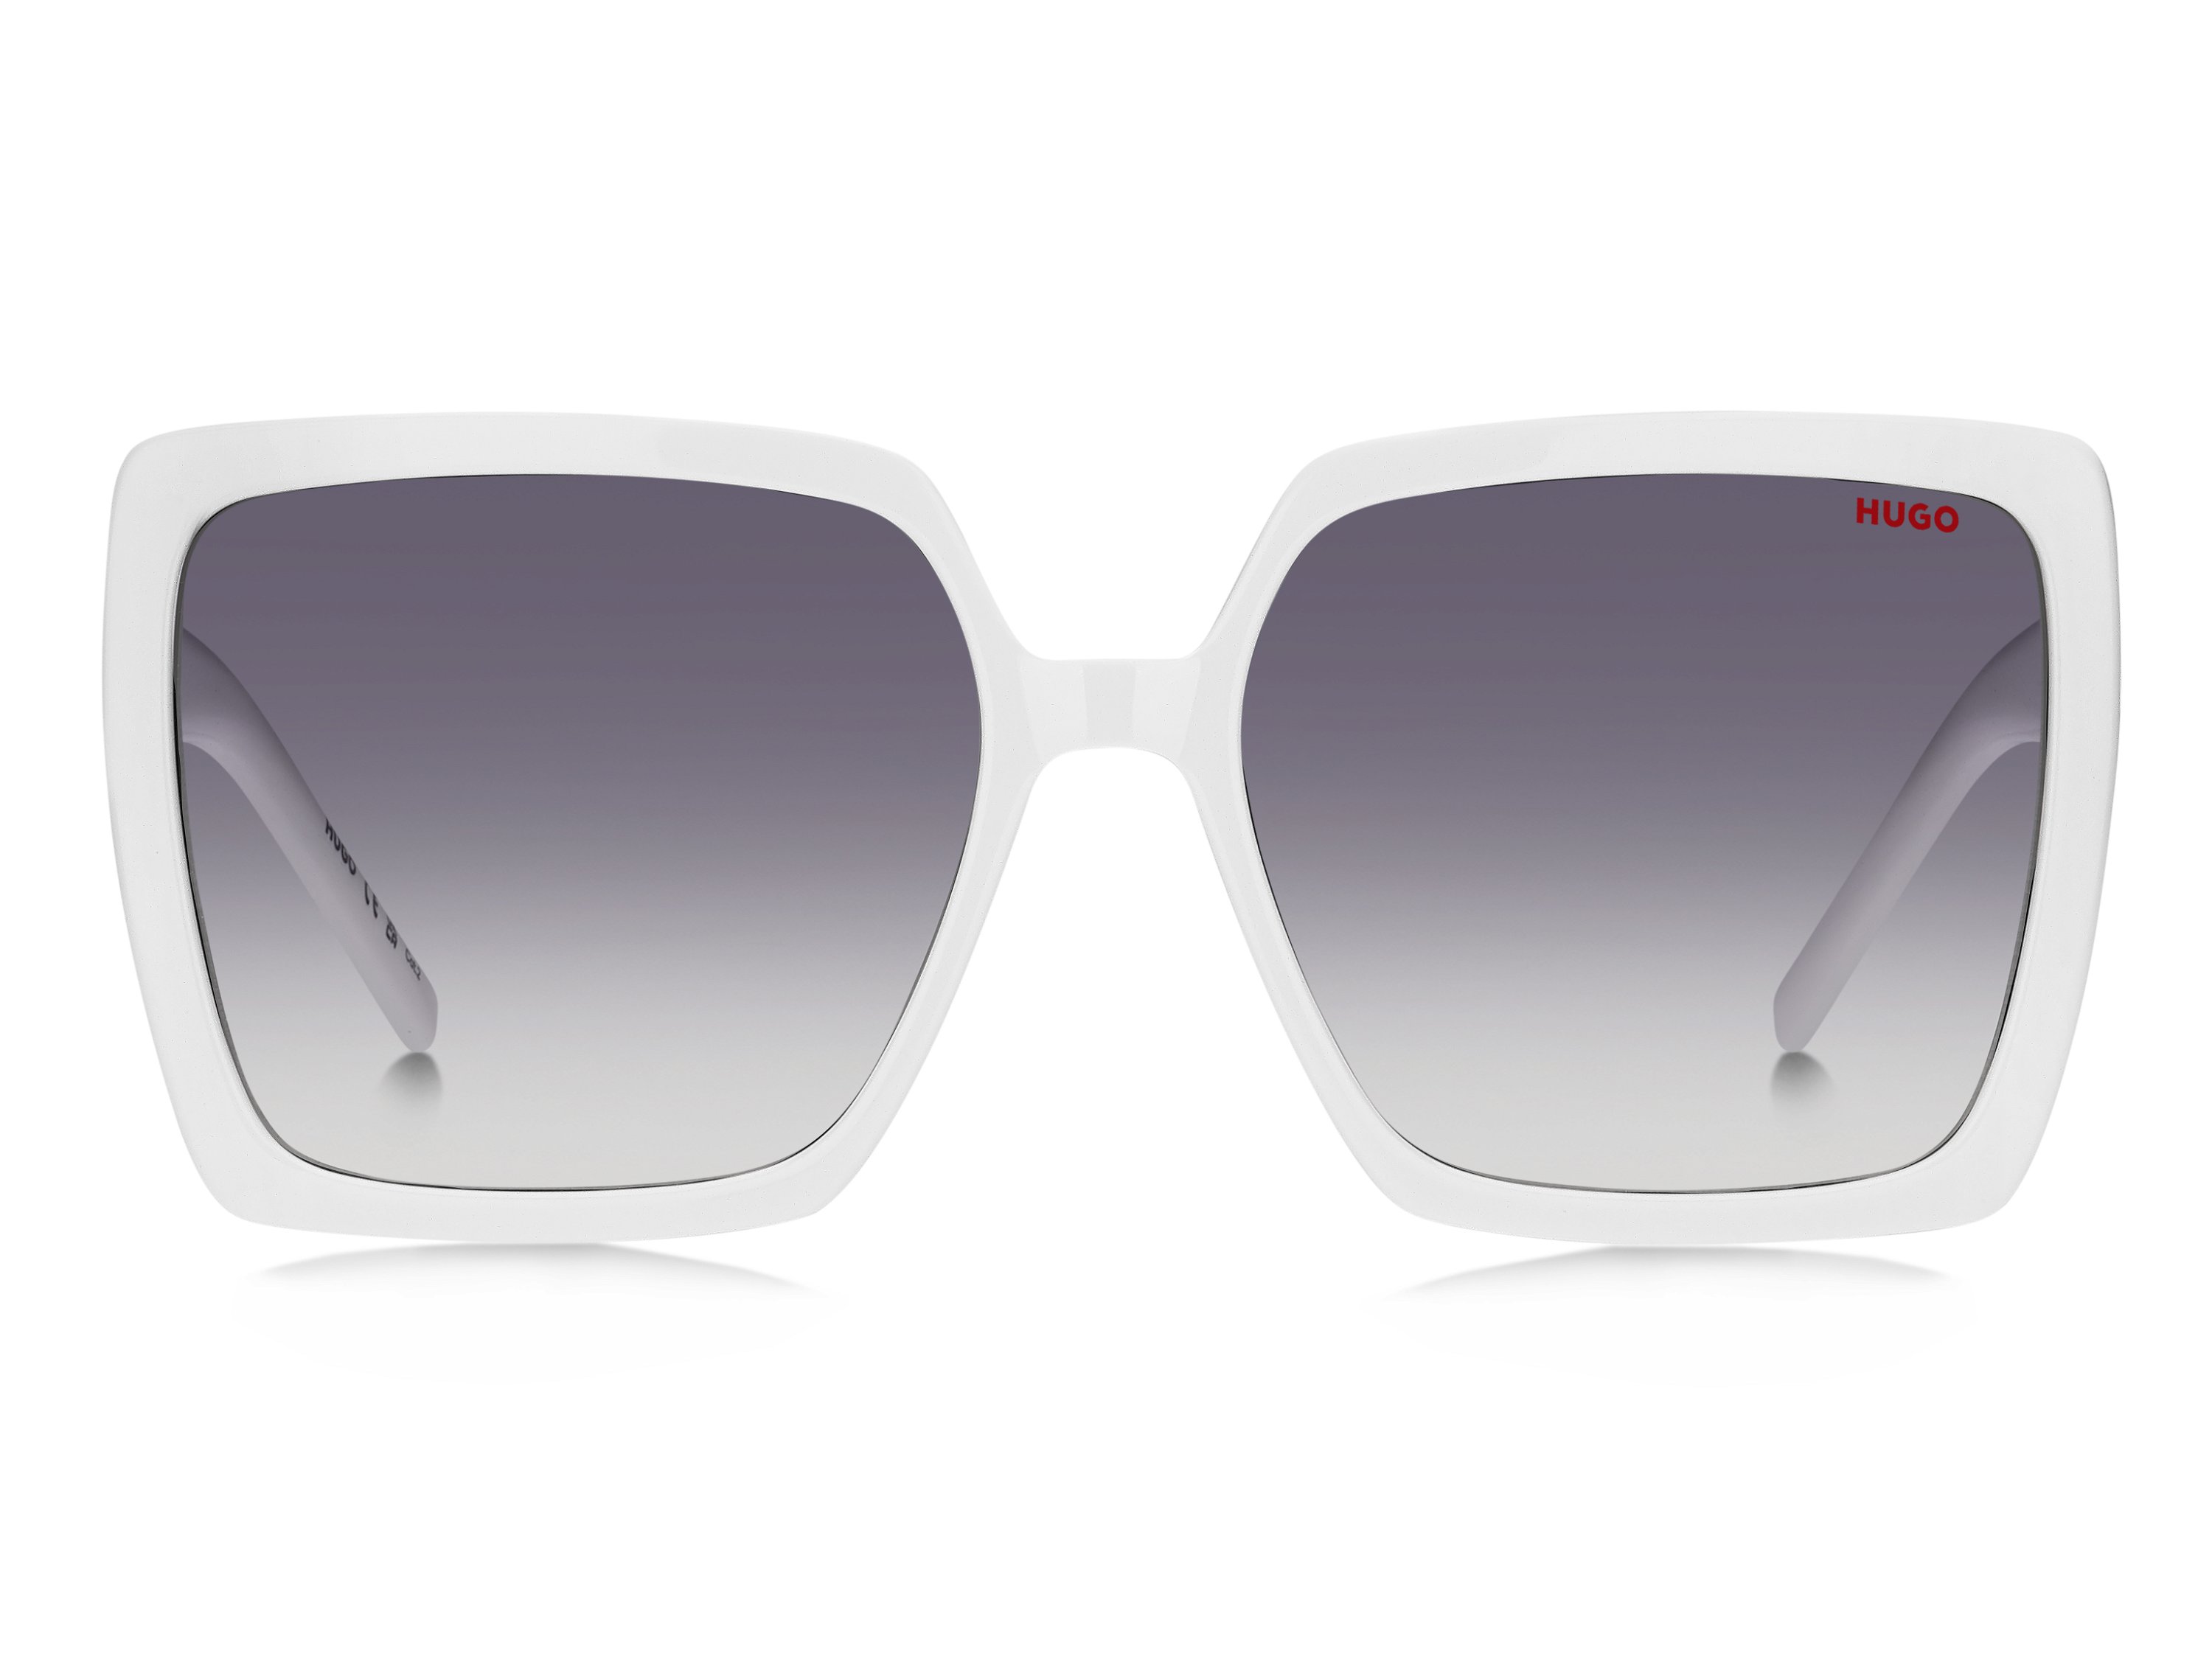 Das Bild zeigt die Sonnenbrille HG1285/S VK6 von der Marke Hugo in weiß.